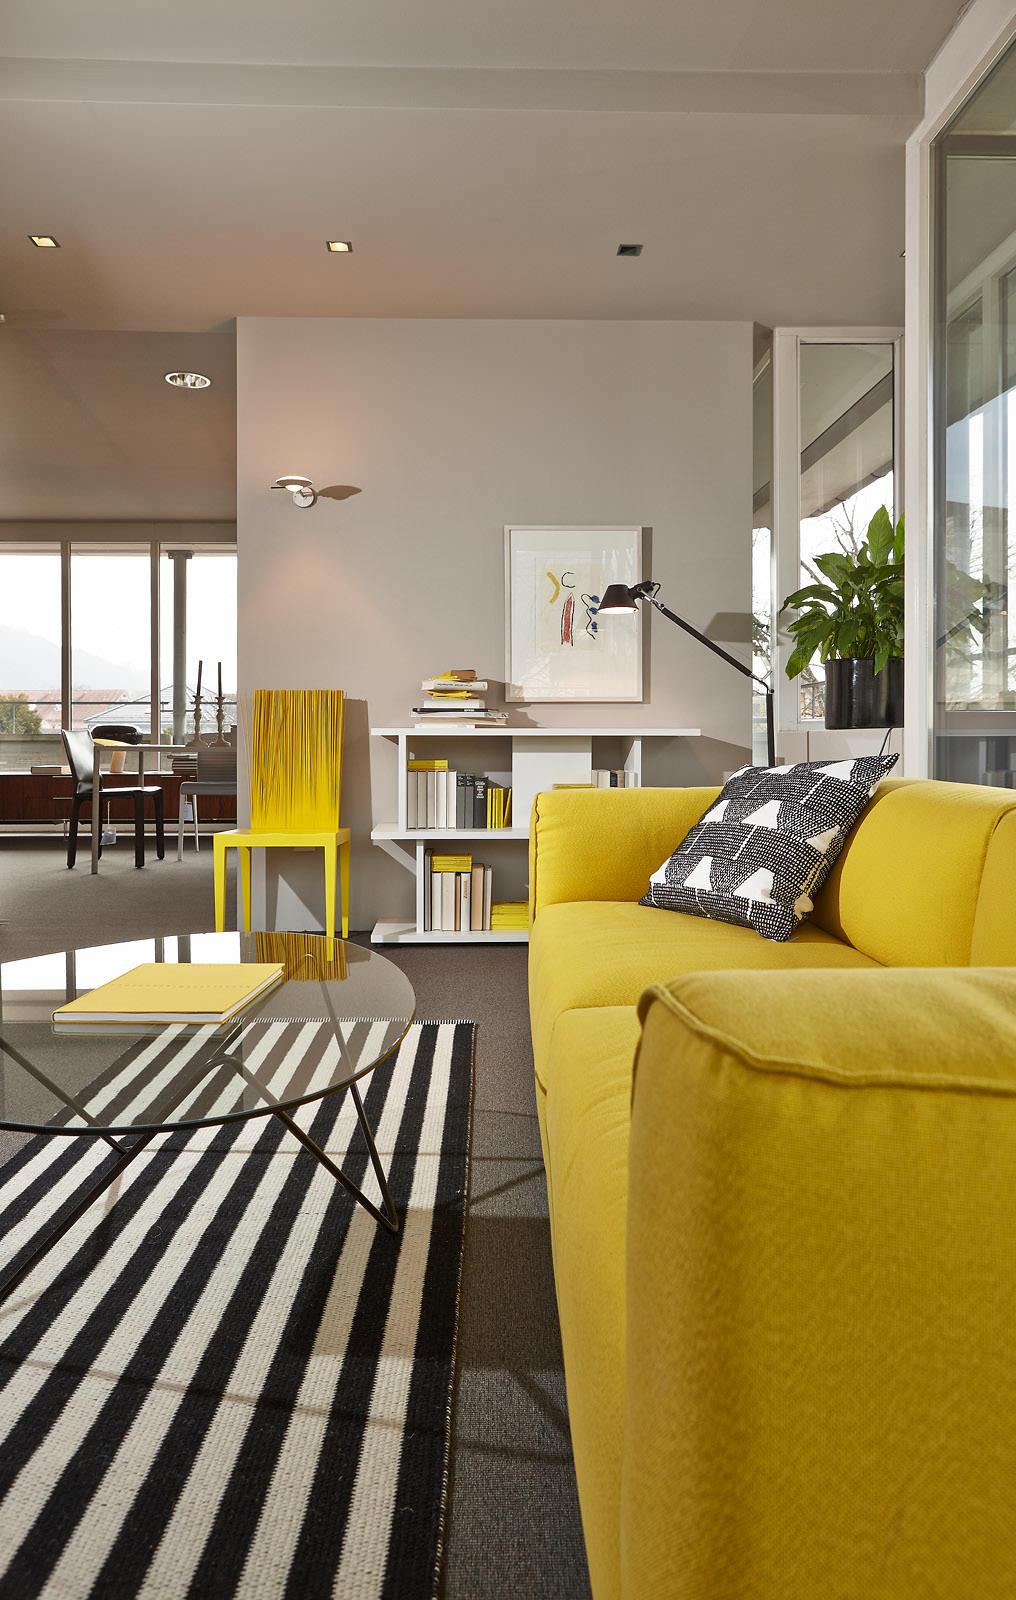 Wohnzimmer mit gelben Hinguckern #stuhl #couchtisch #regal #teppich #glastisch #stehlampe #sofa #glascouchtisch #gelbessofa #wohnzimmergestaltung ©Seipp Wohnen